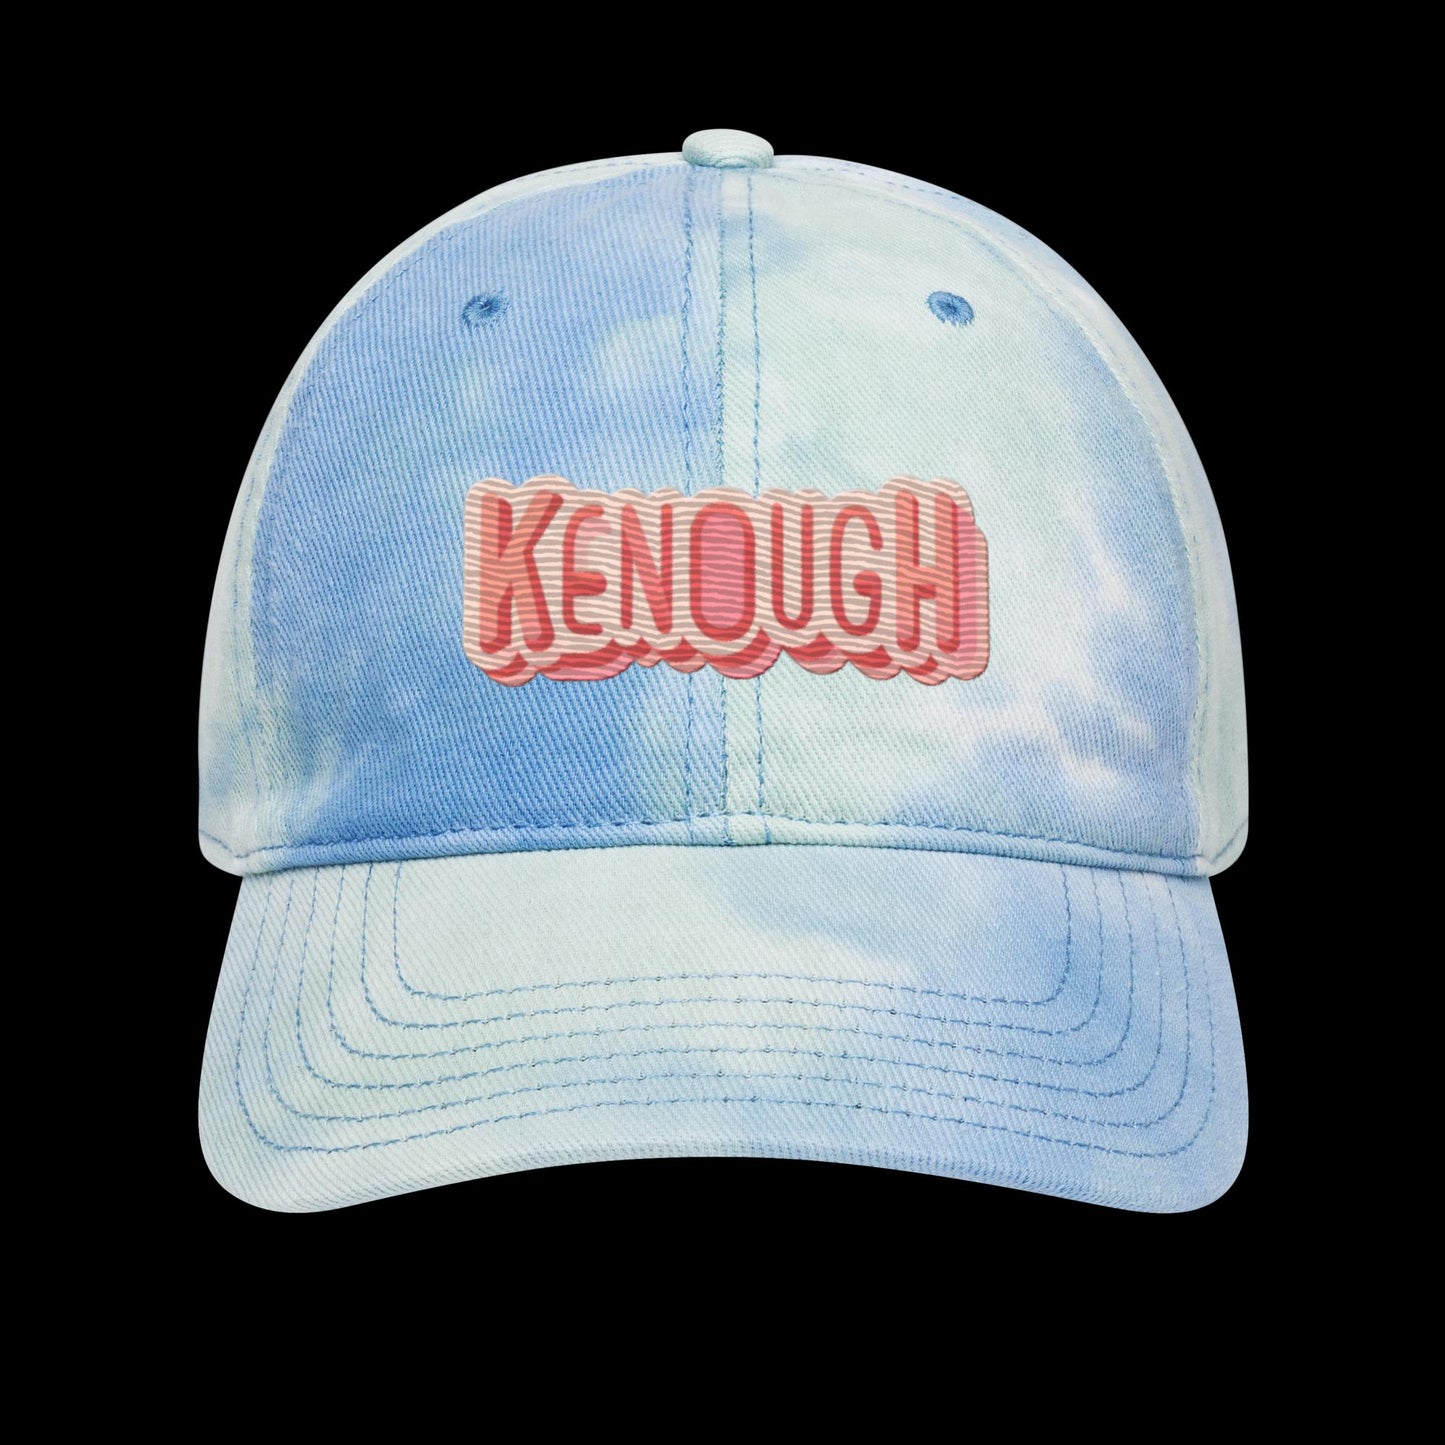 Kenough Tie dye hat